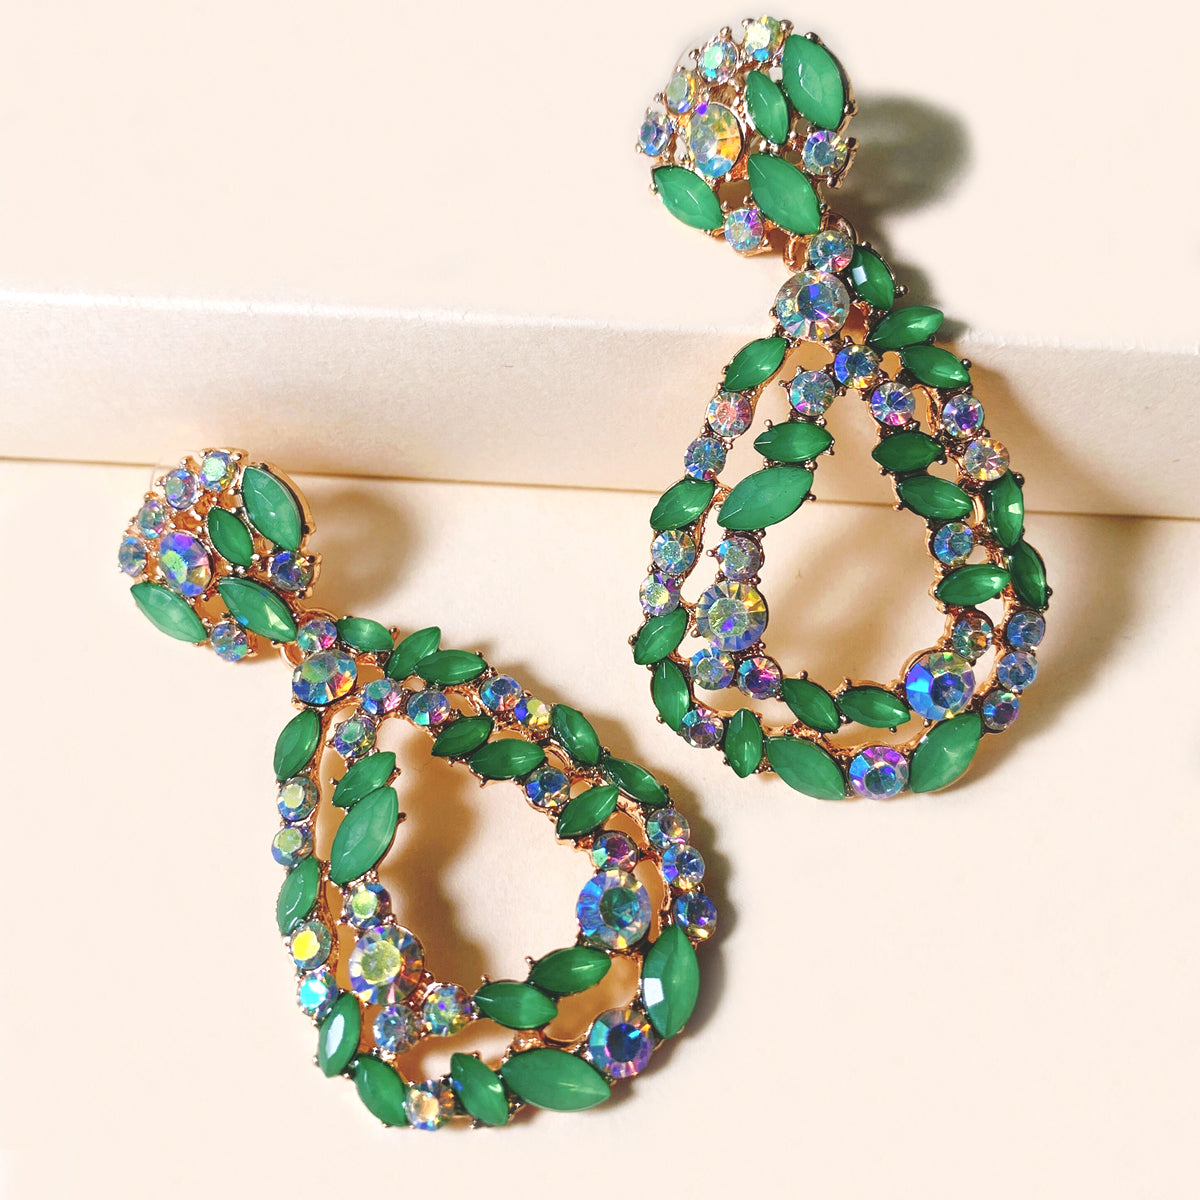 Green Crystal & Cubic Zirconia 18K Gold-Plated Teardrop Earrings